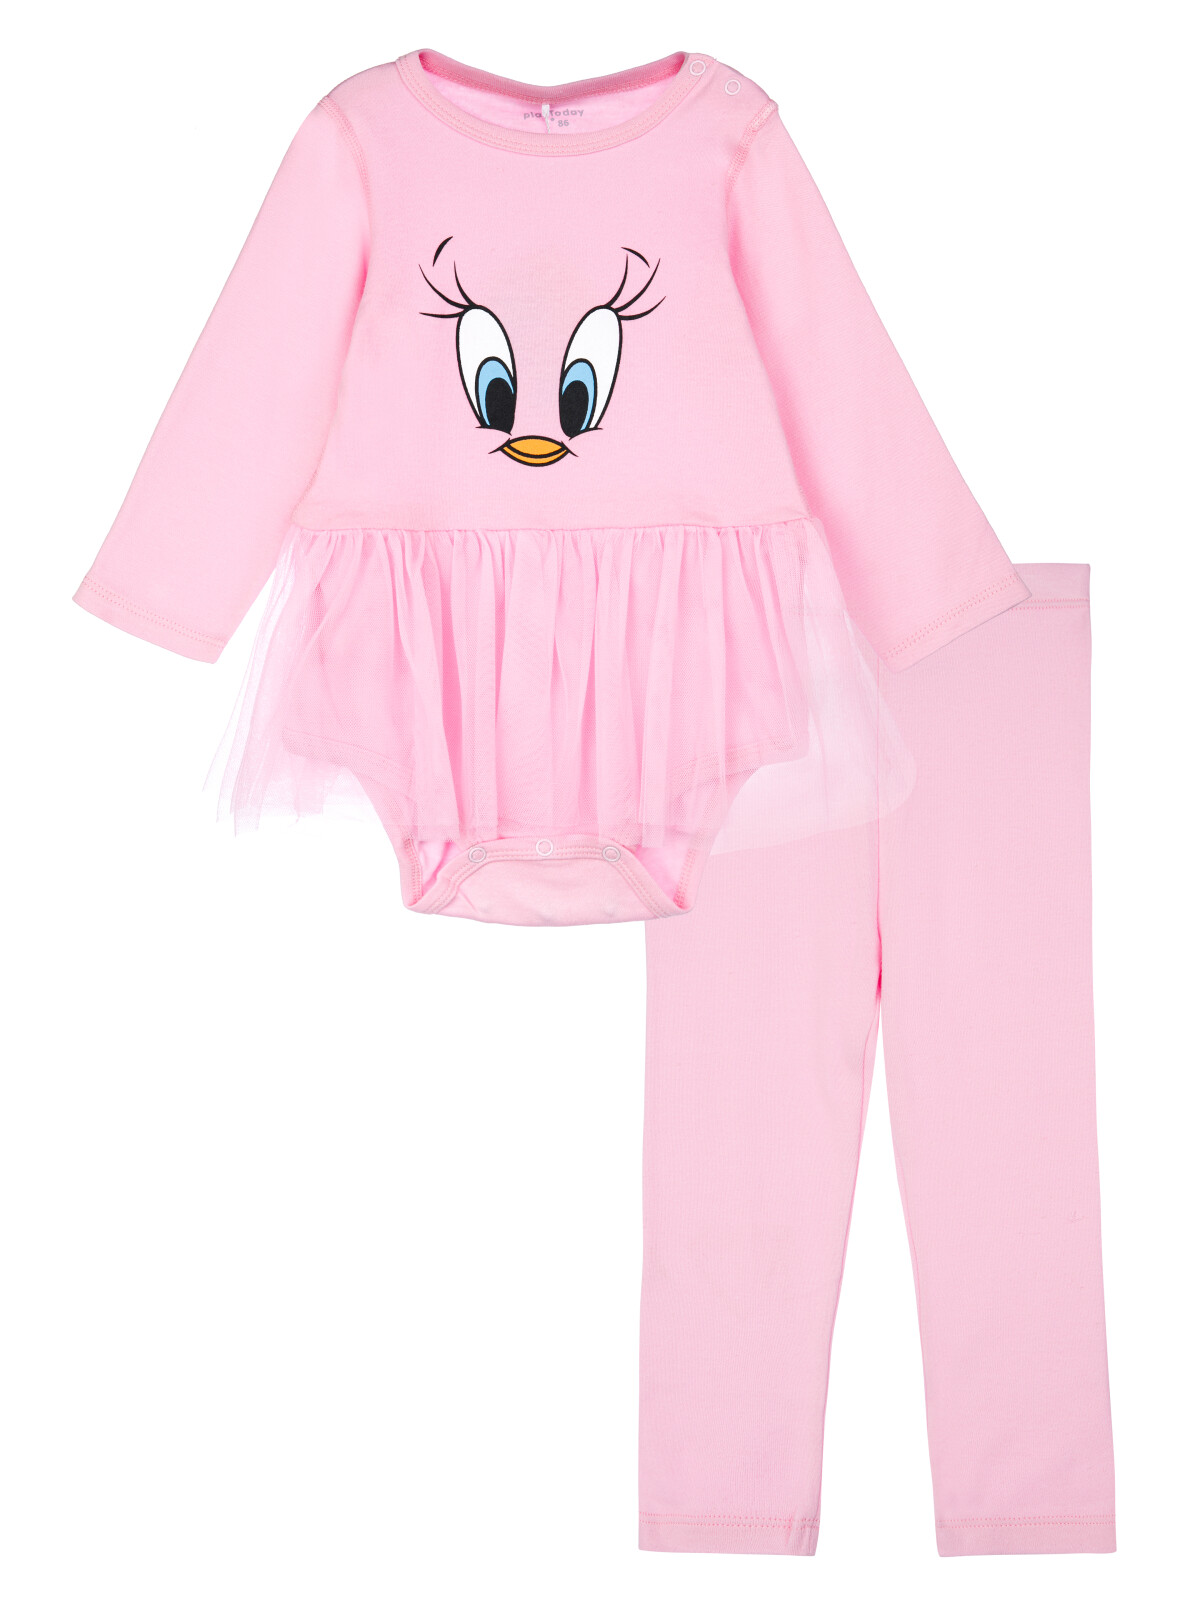 Комплект одежды PlayToday 12449054, светло-розовый, 80